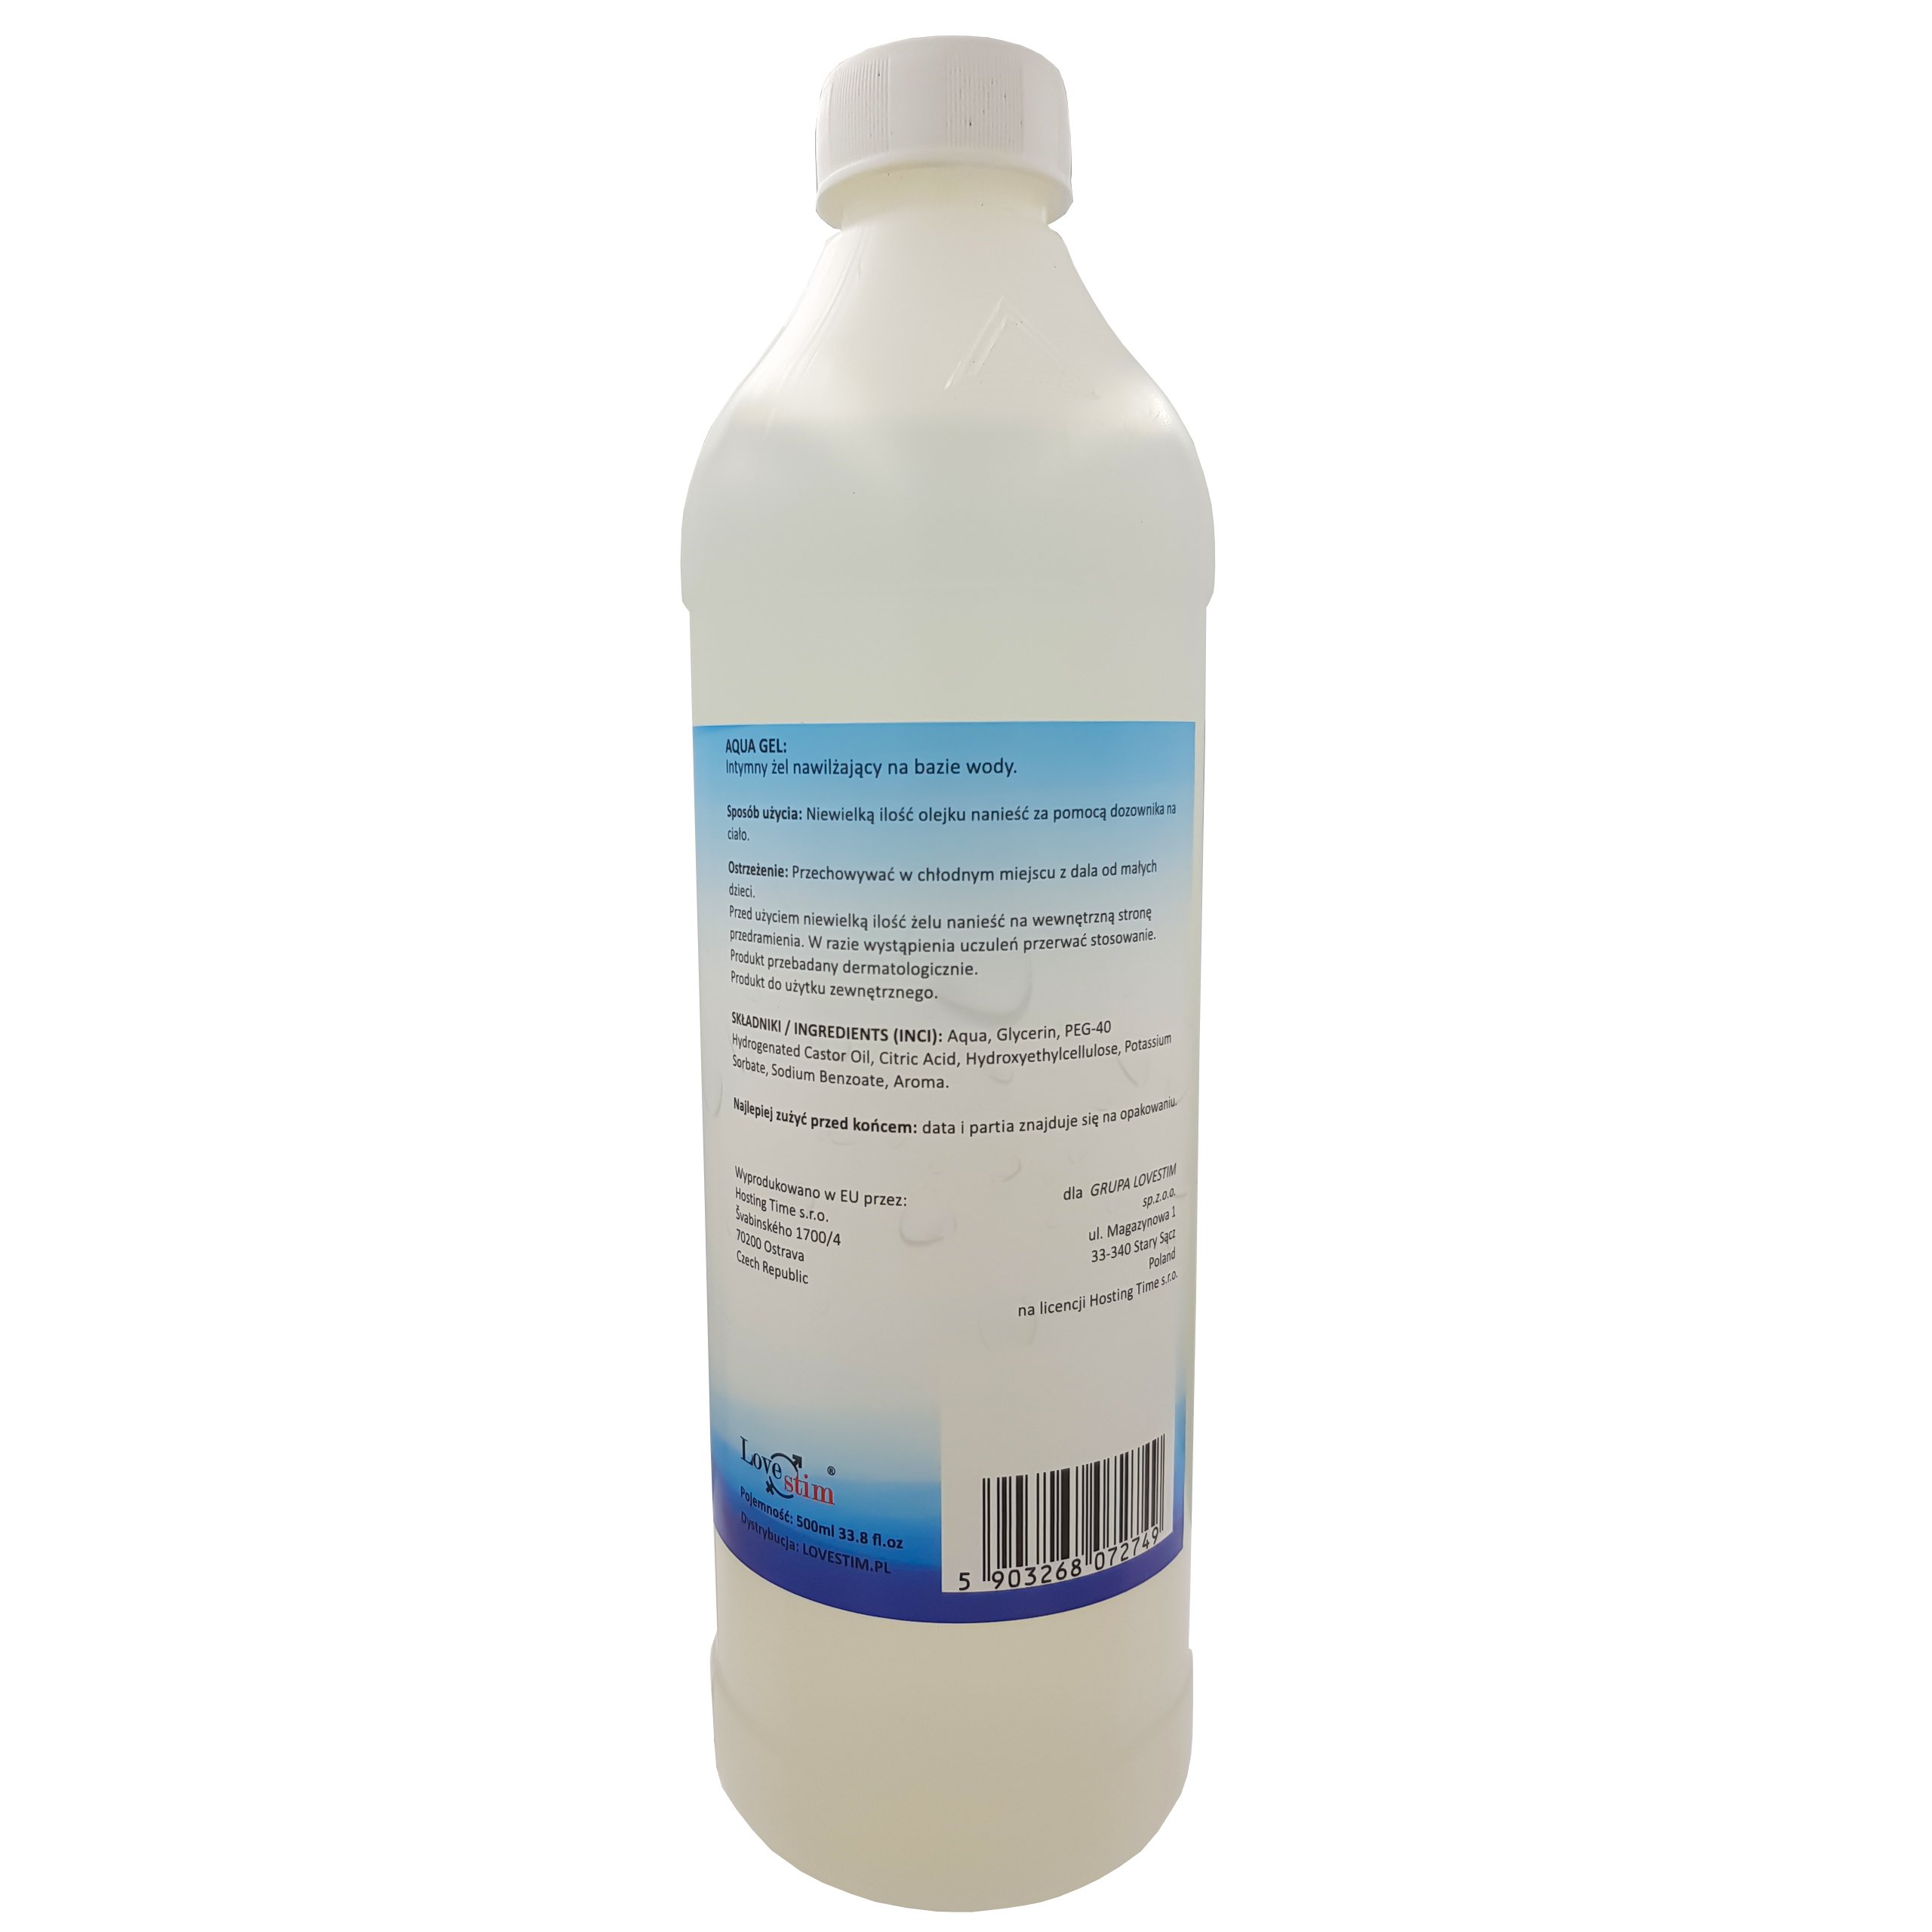 Aqua Gel 500ml lubrykant intymny uniwersalny